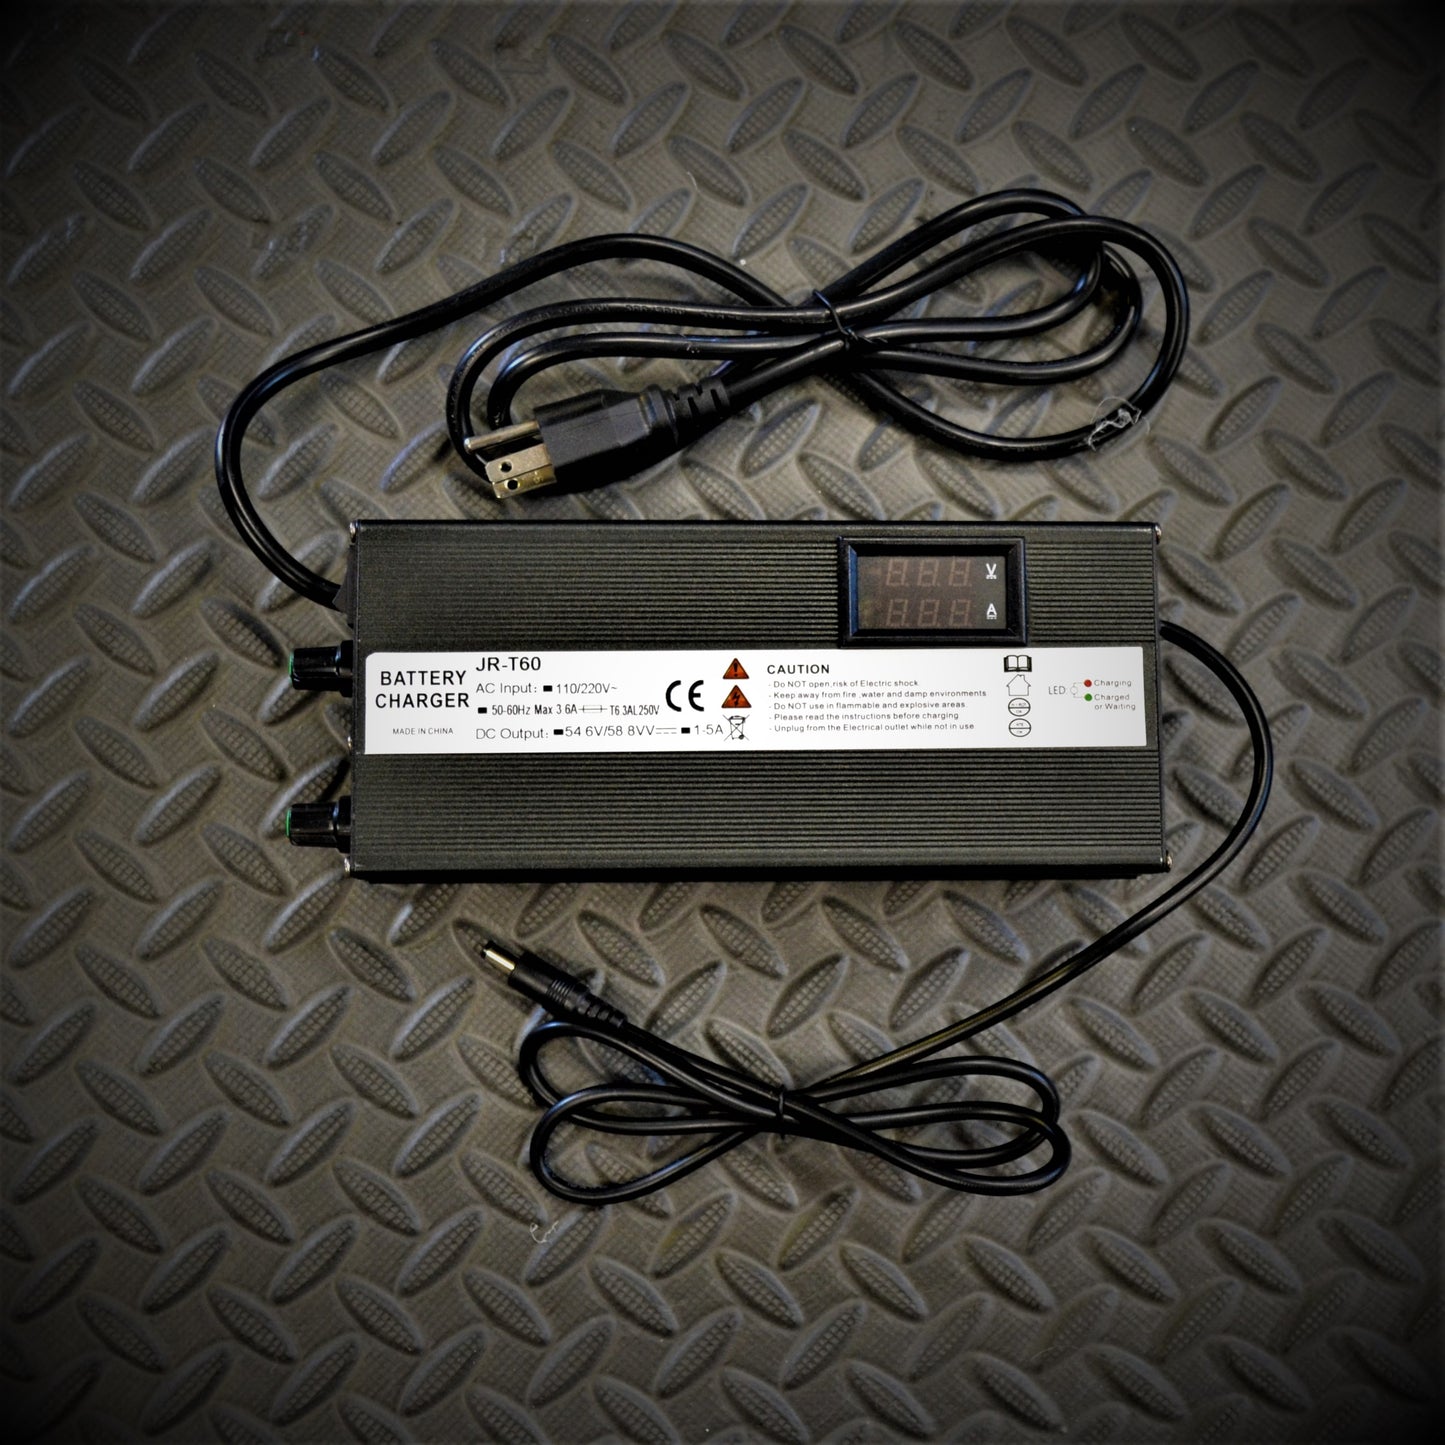 Chargeur intelligent - 48/52V - Courant et tension réglables